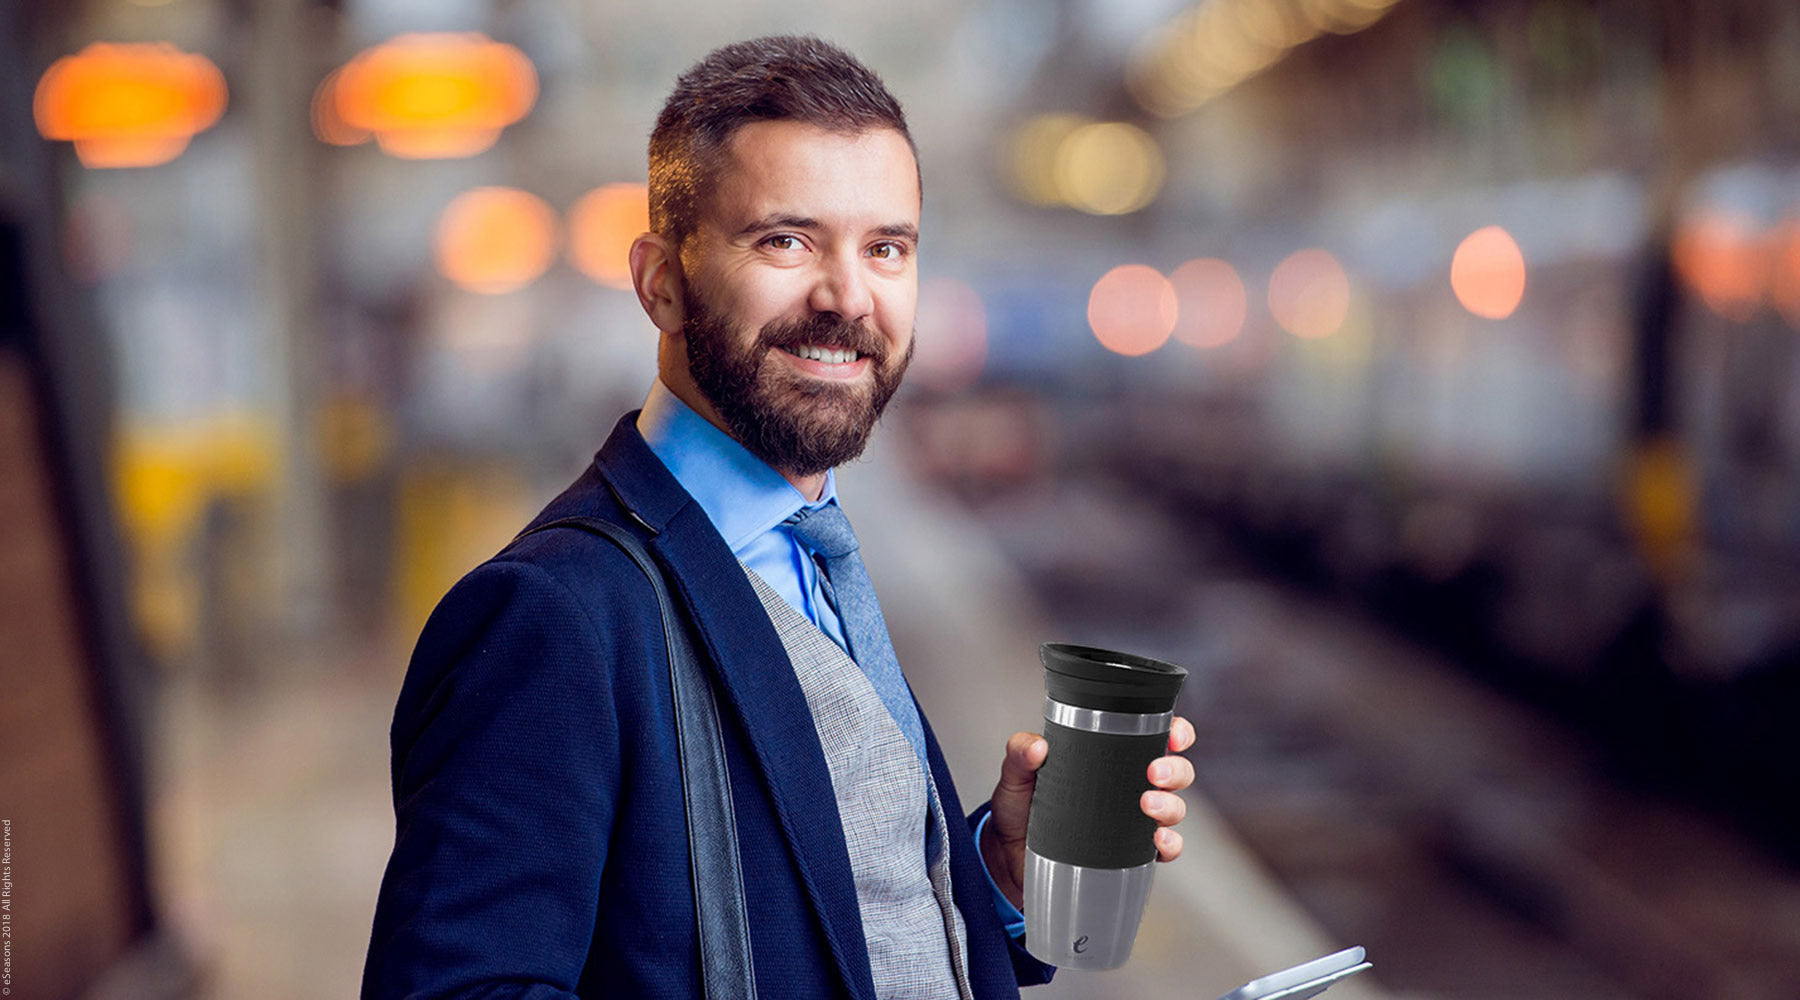 eSeasons Vakuum isolierter Thermobecher: heißer Kaffee oder Tee auf dem Weg zur Arbeit in Zug und Bus